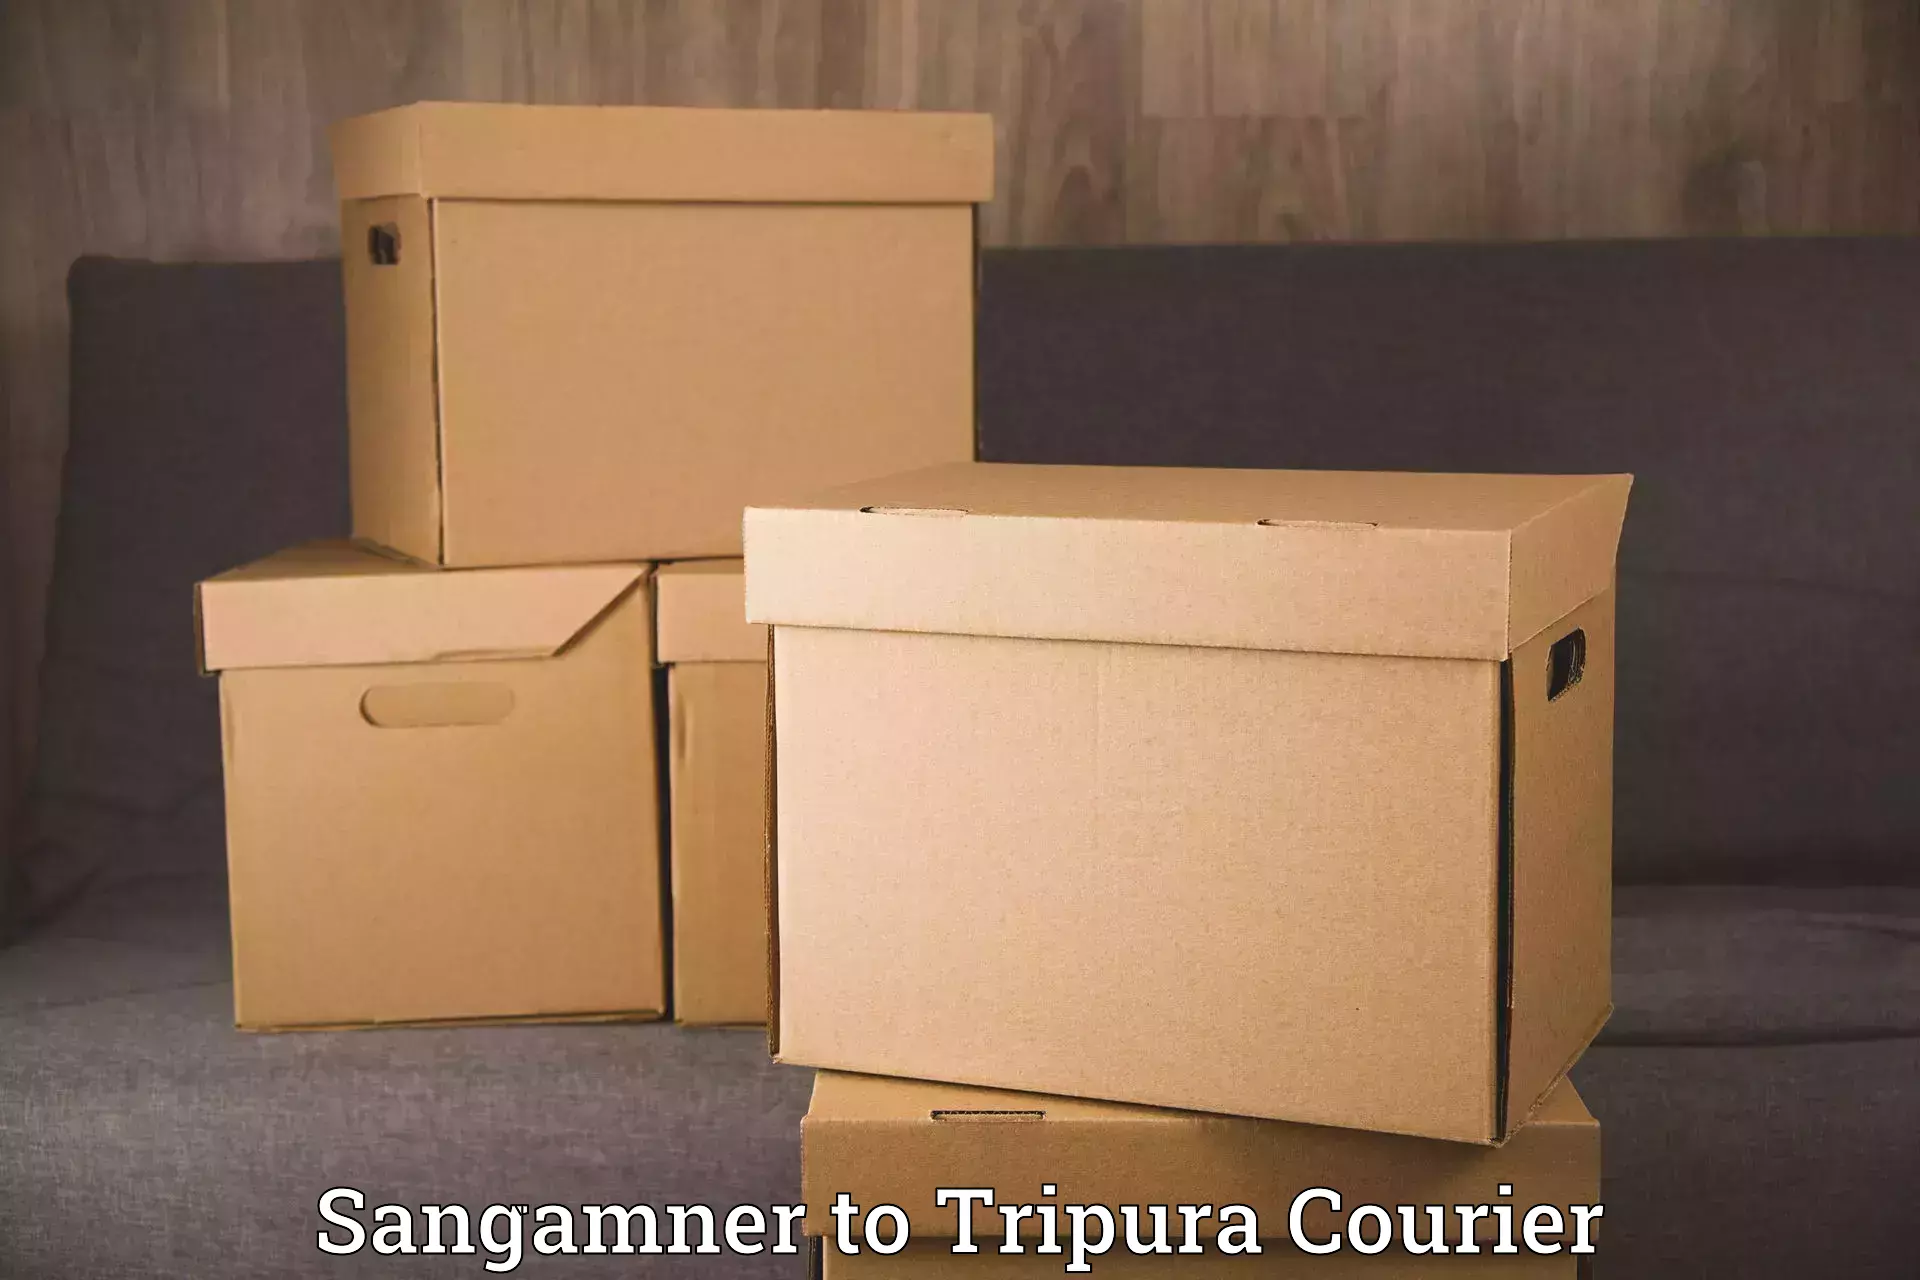 Furniture transport experts Sangamner to Aambasa